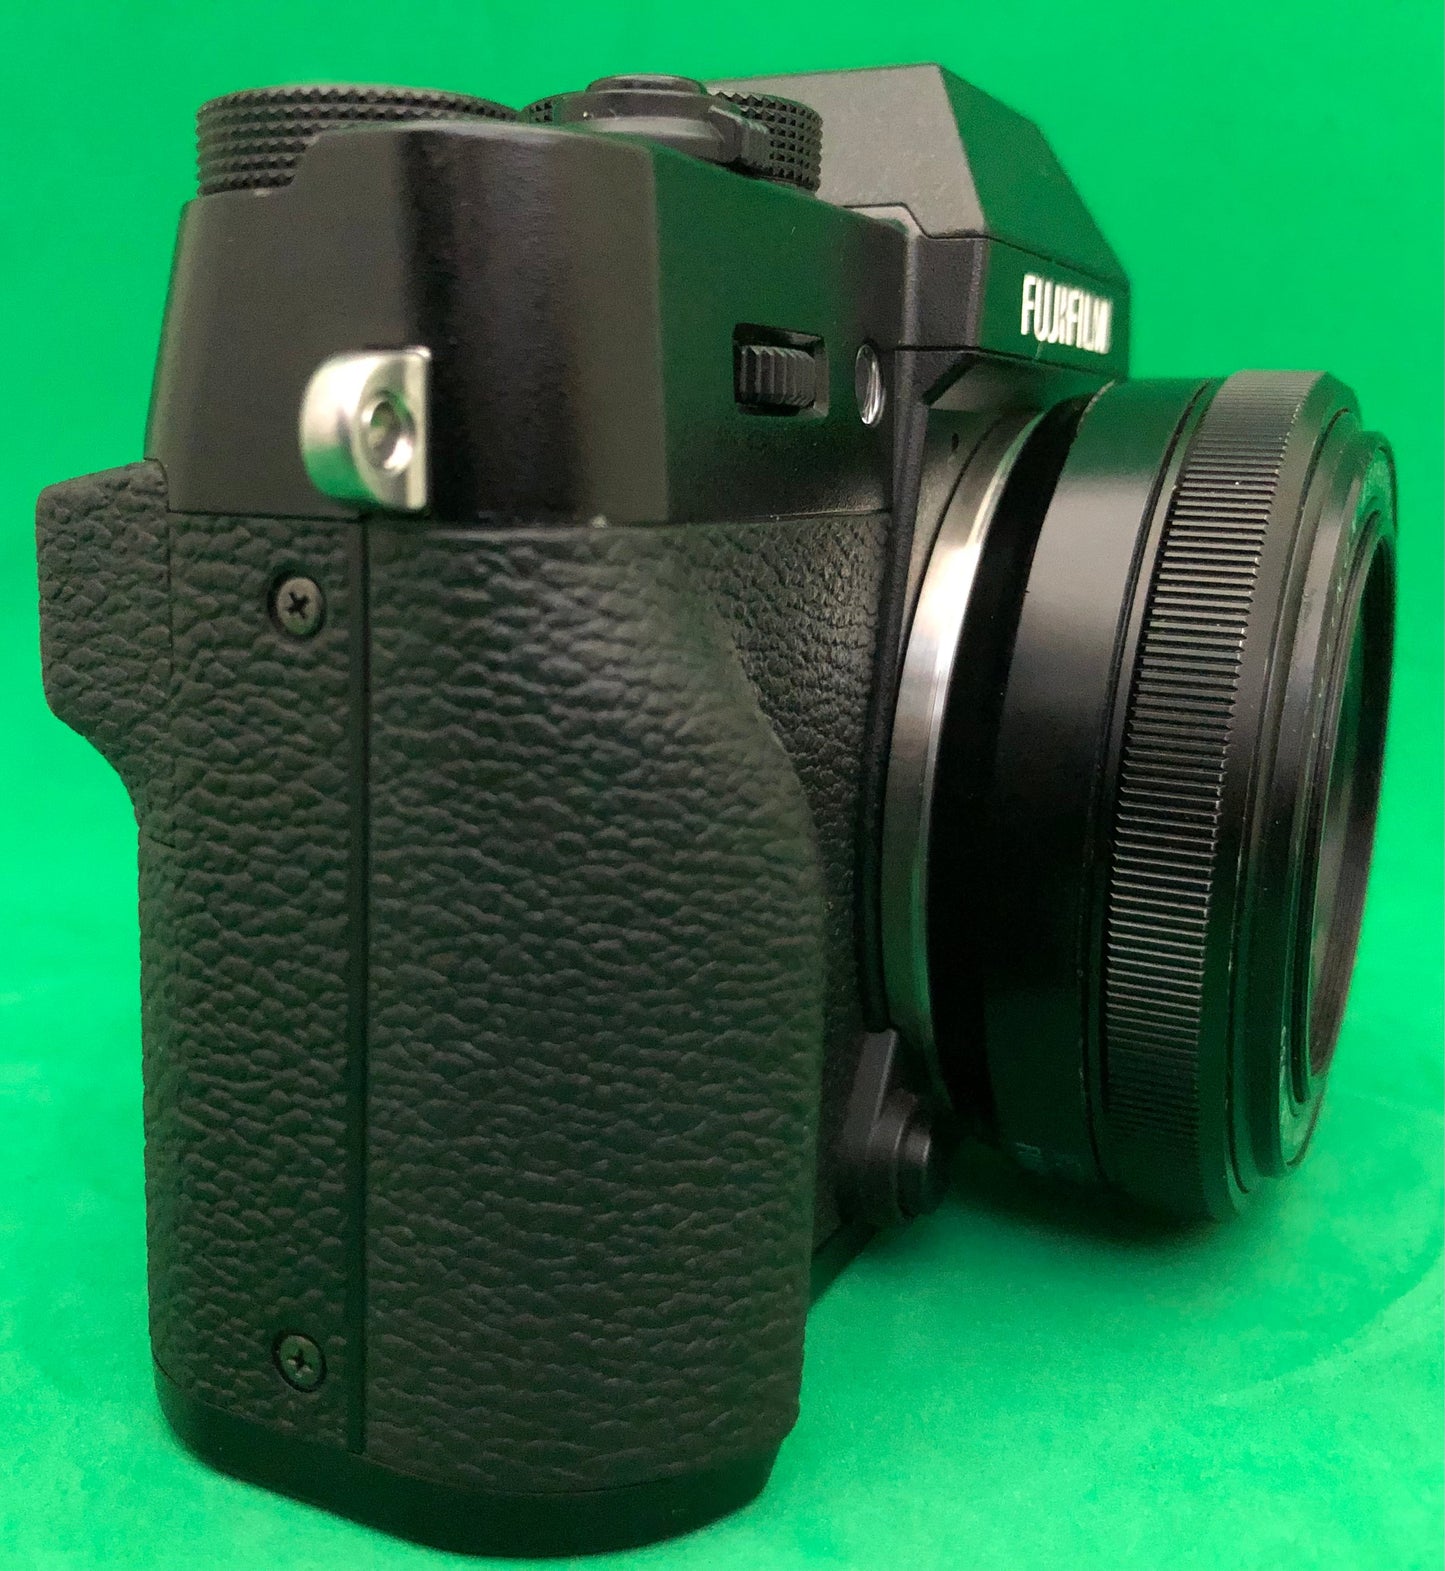 Fujifilm X-T30 Mirrorless + Lens Fujifilm XF 27mm f/2.8 (used)